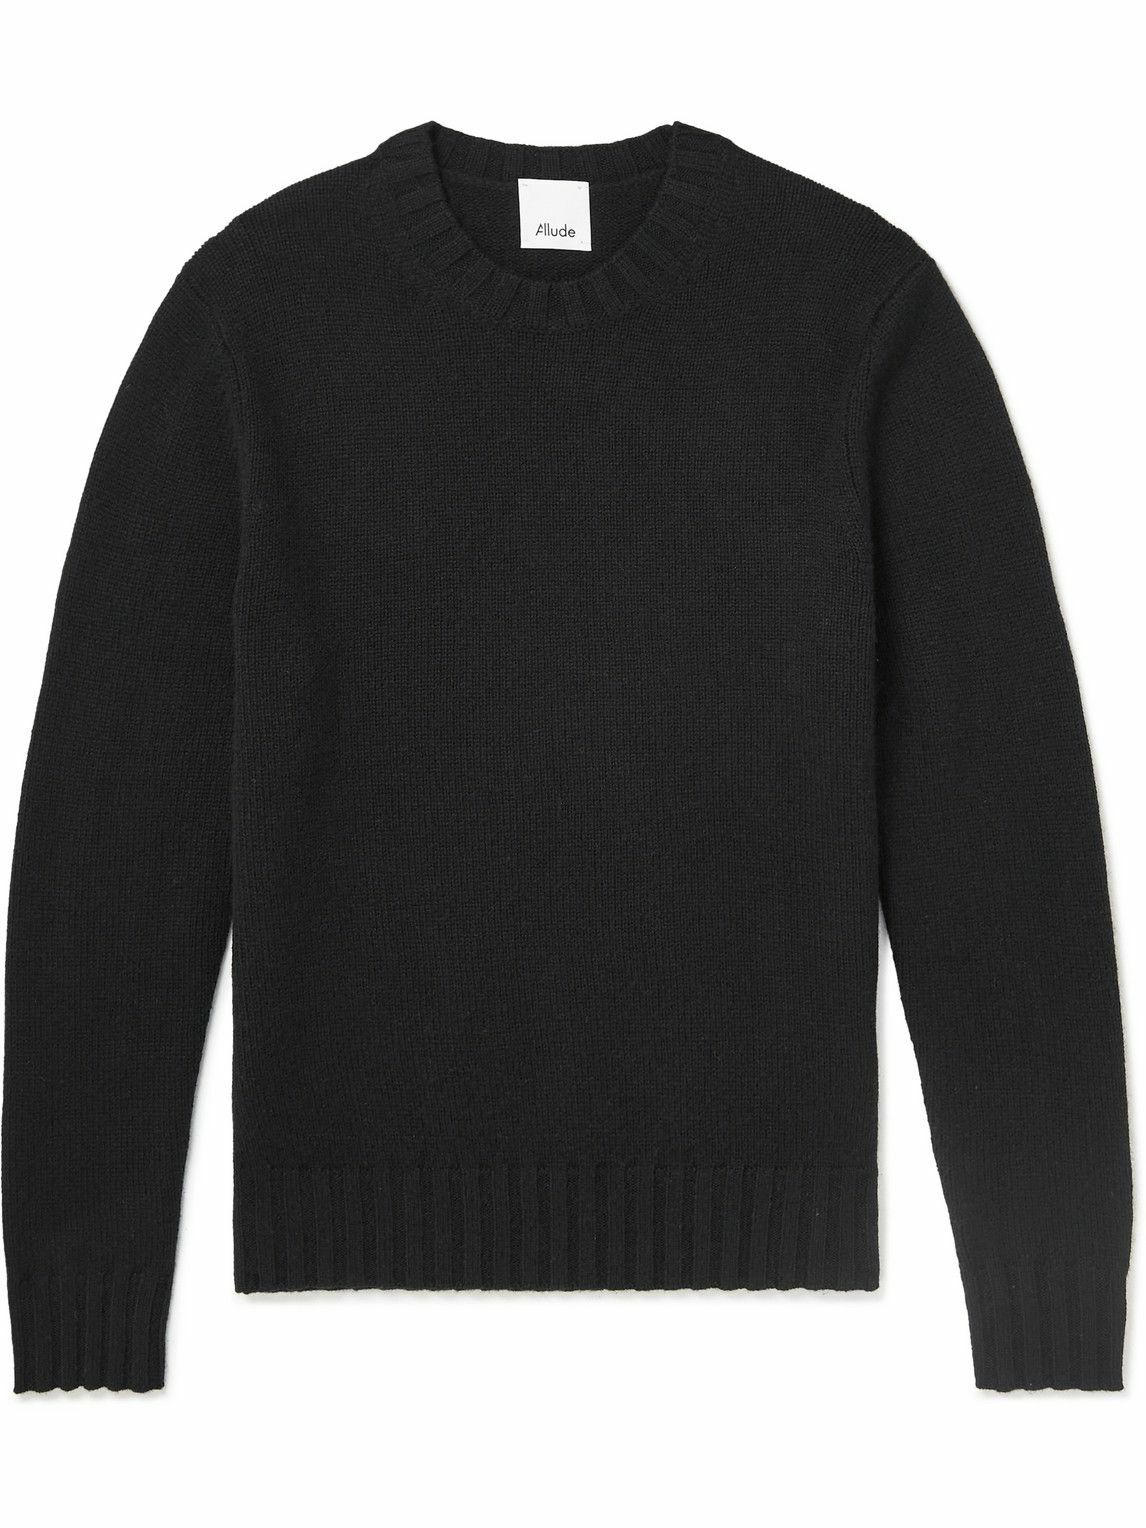 Photo: Allude - Cashmere Sweater - Black